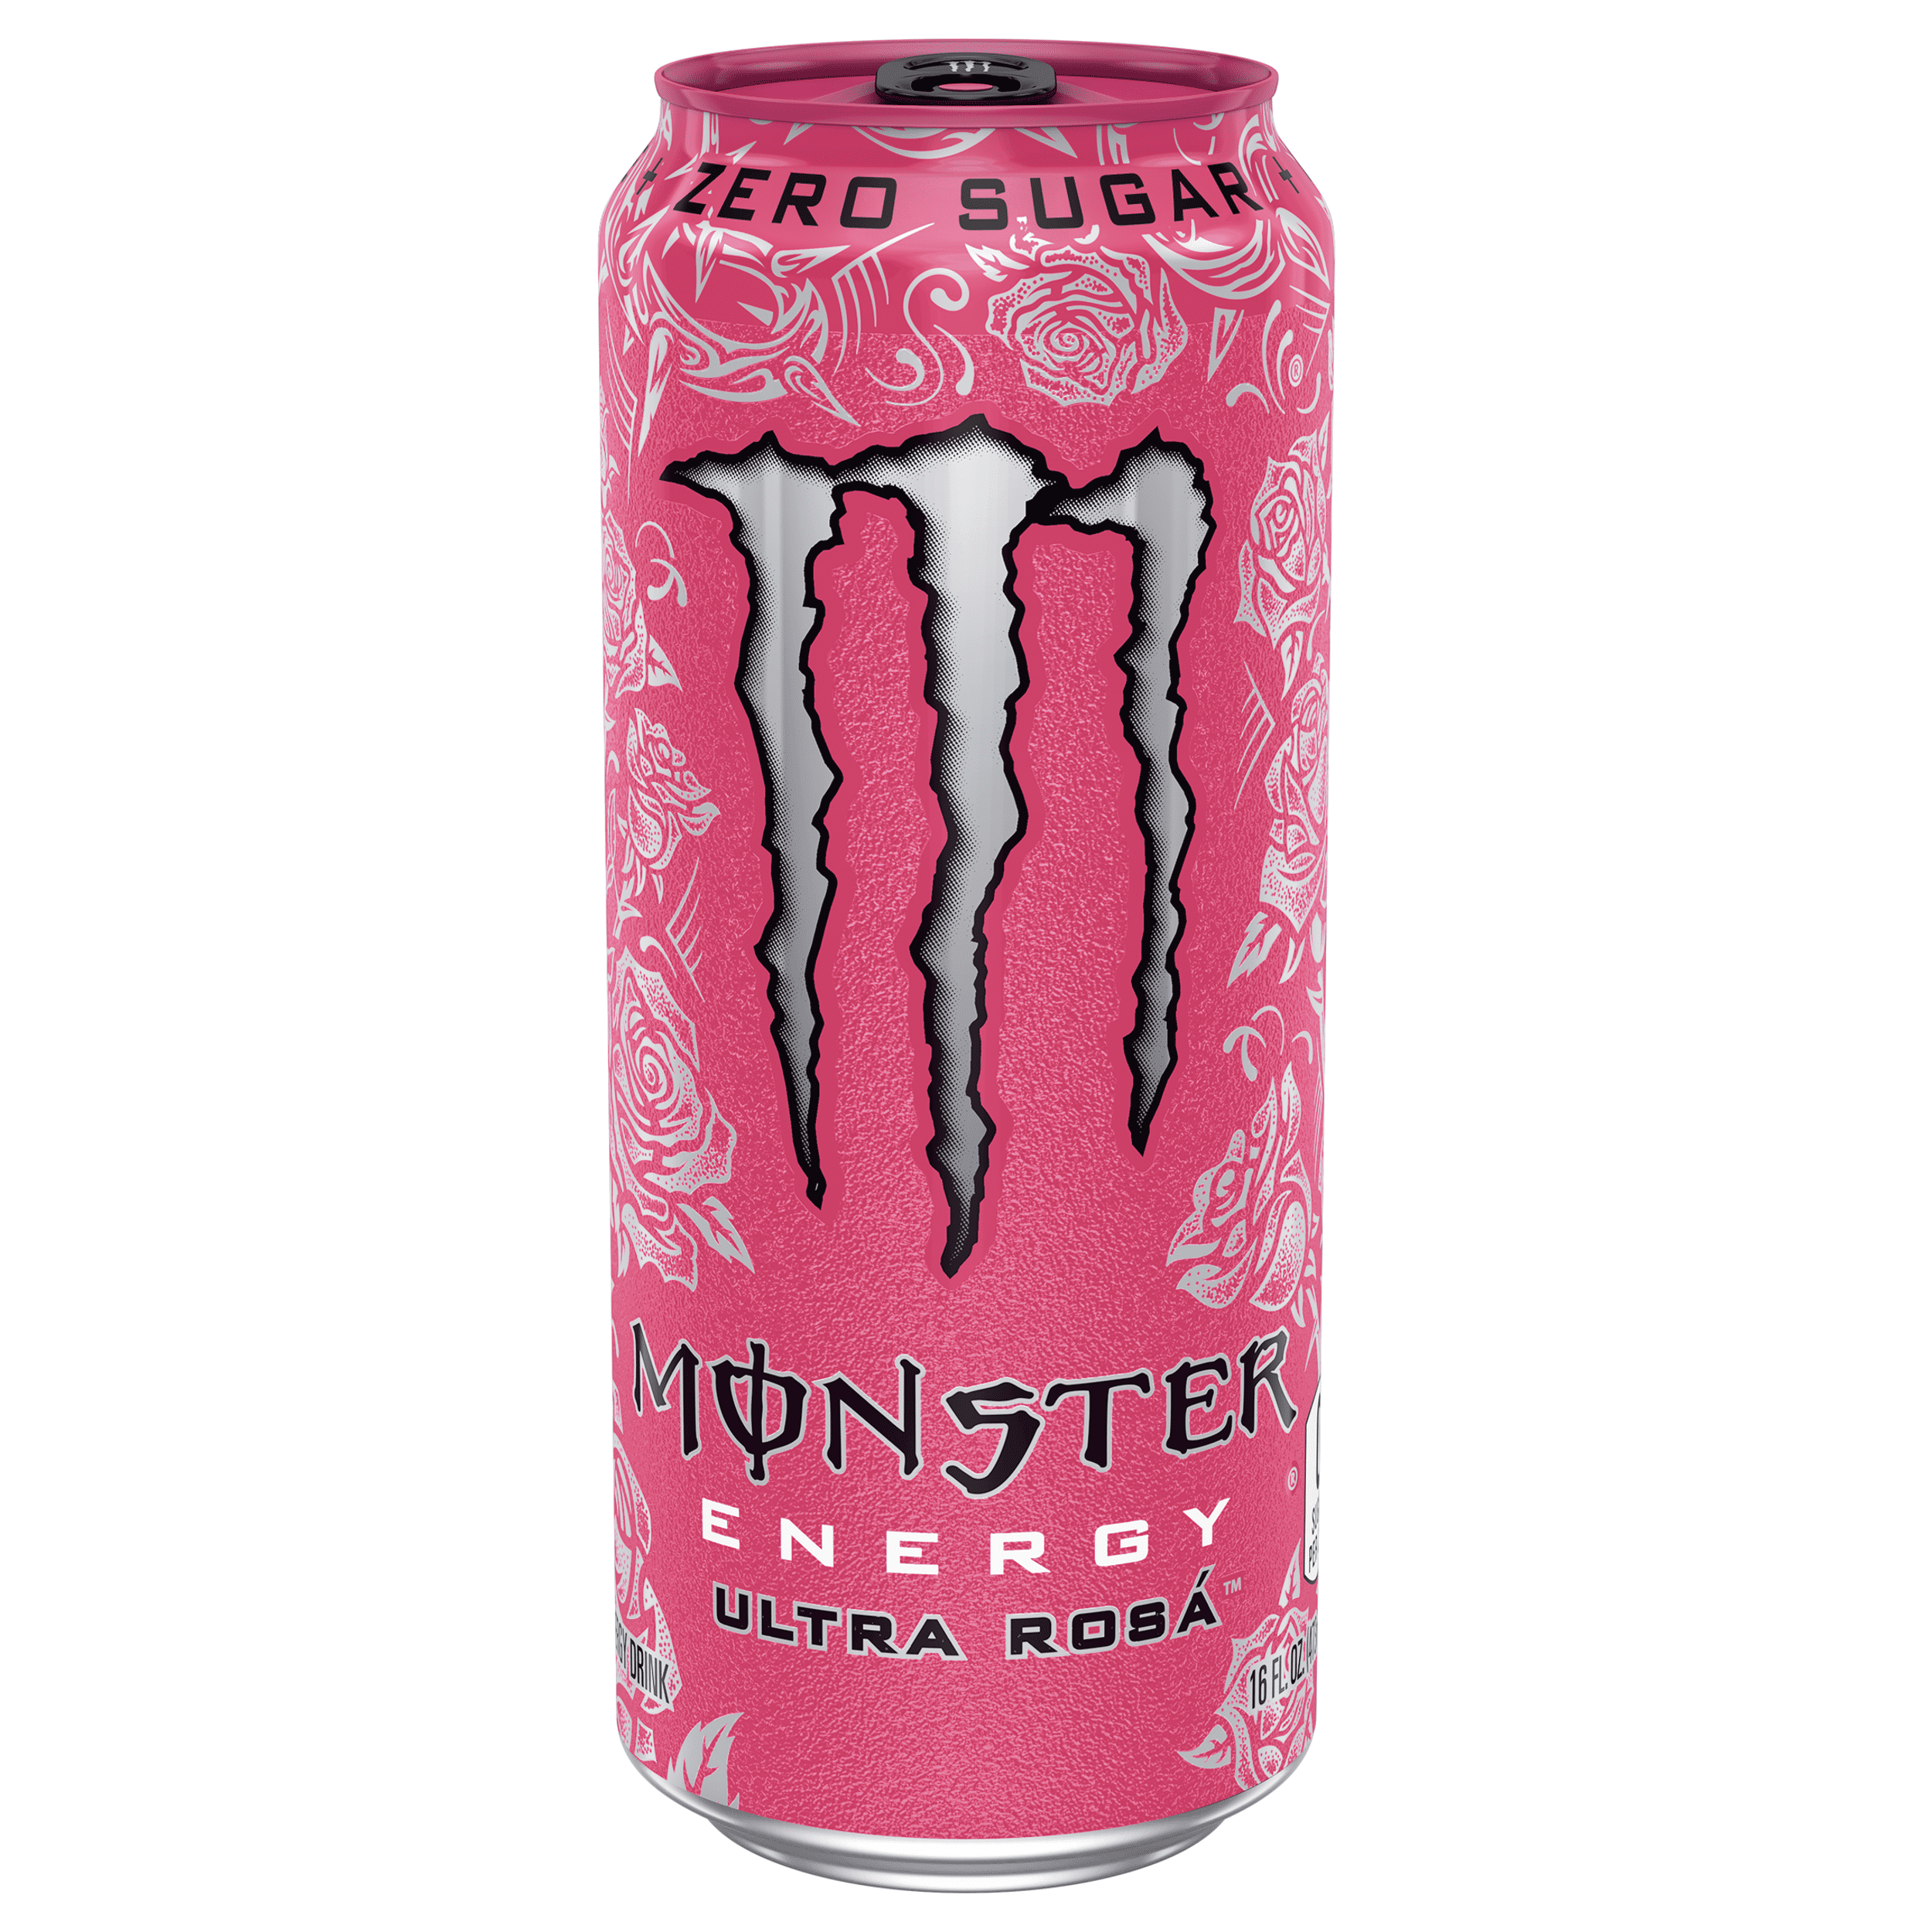 Đặc biệt, đồ uống Monster Energy Ultra Rosa không đường là lựa chọn hoàn hảo cho những ai yêu thích các đồ uống có hương vị tươi trẻ và không quá ngọt. Hãy thử ngay và cảm nhận sự tuyệt vời của đồ uống Monster Energy Ultra Rosa!